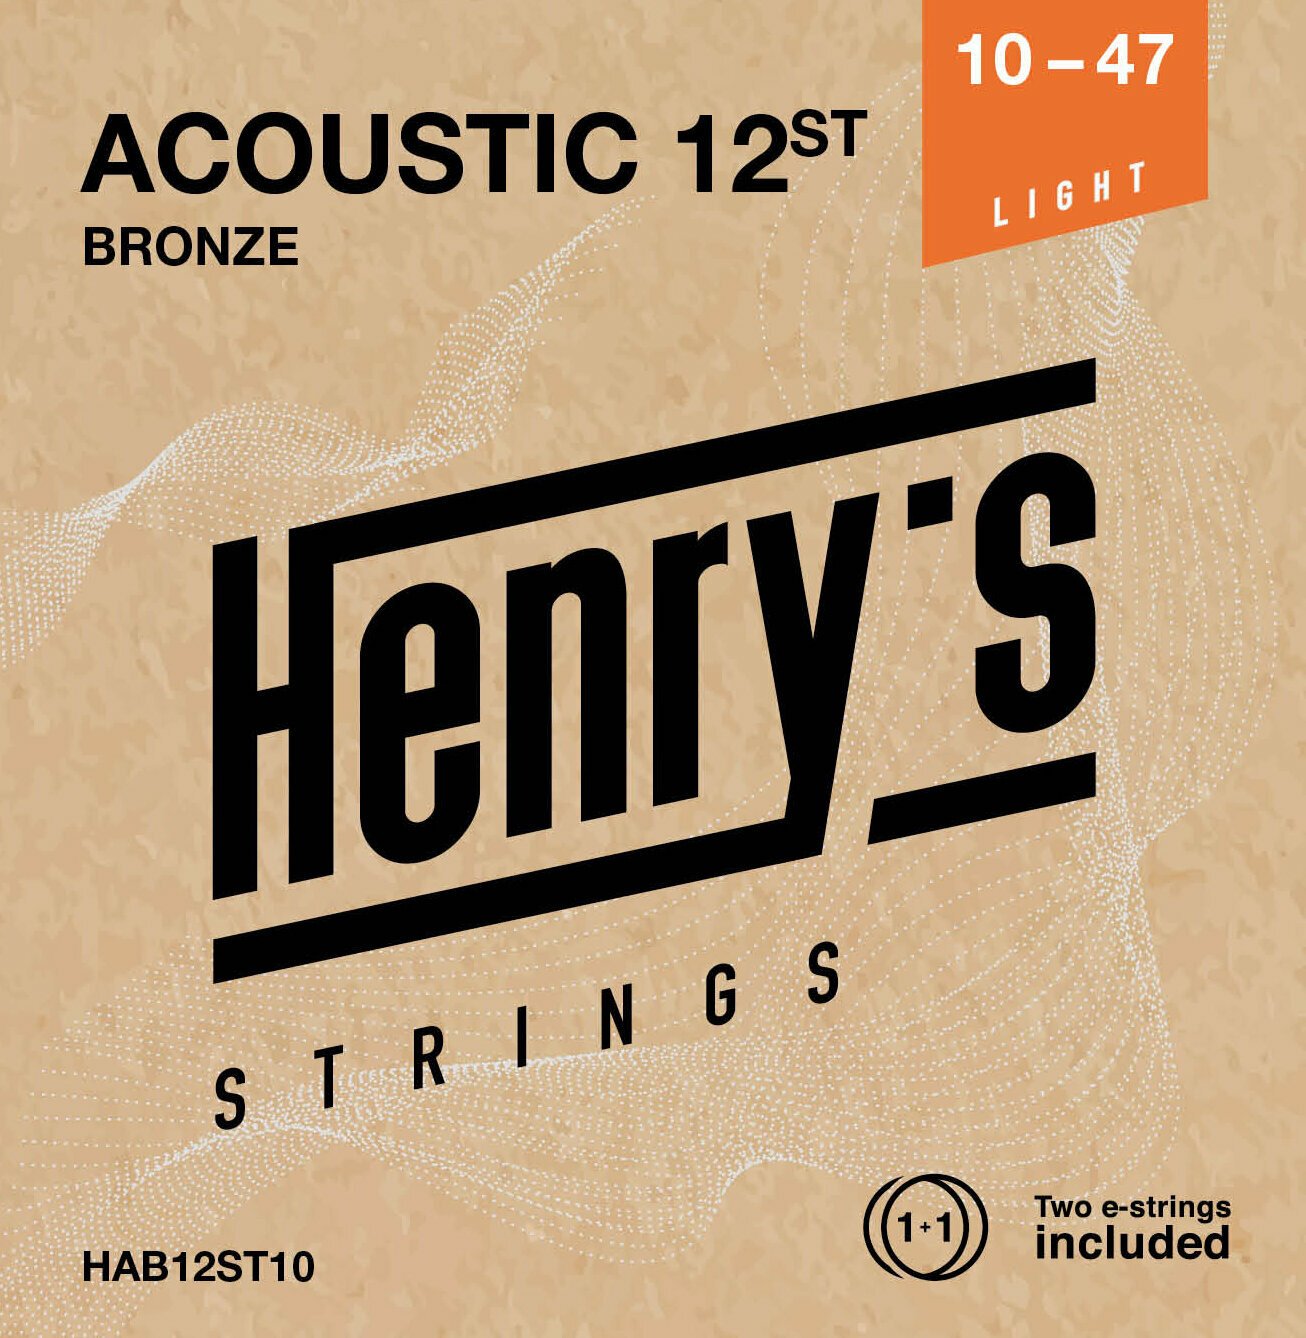 Guitar strings Henry's 12ST Bronze 10-47